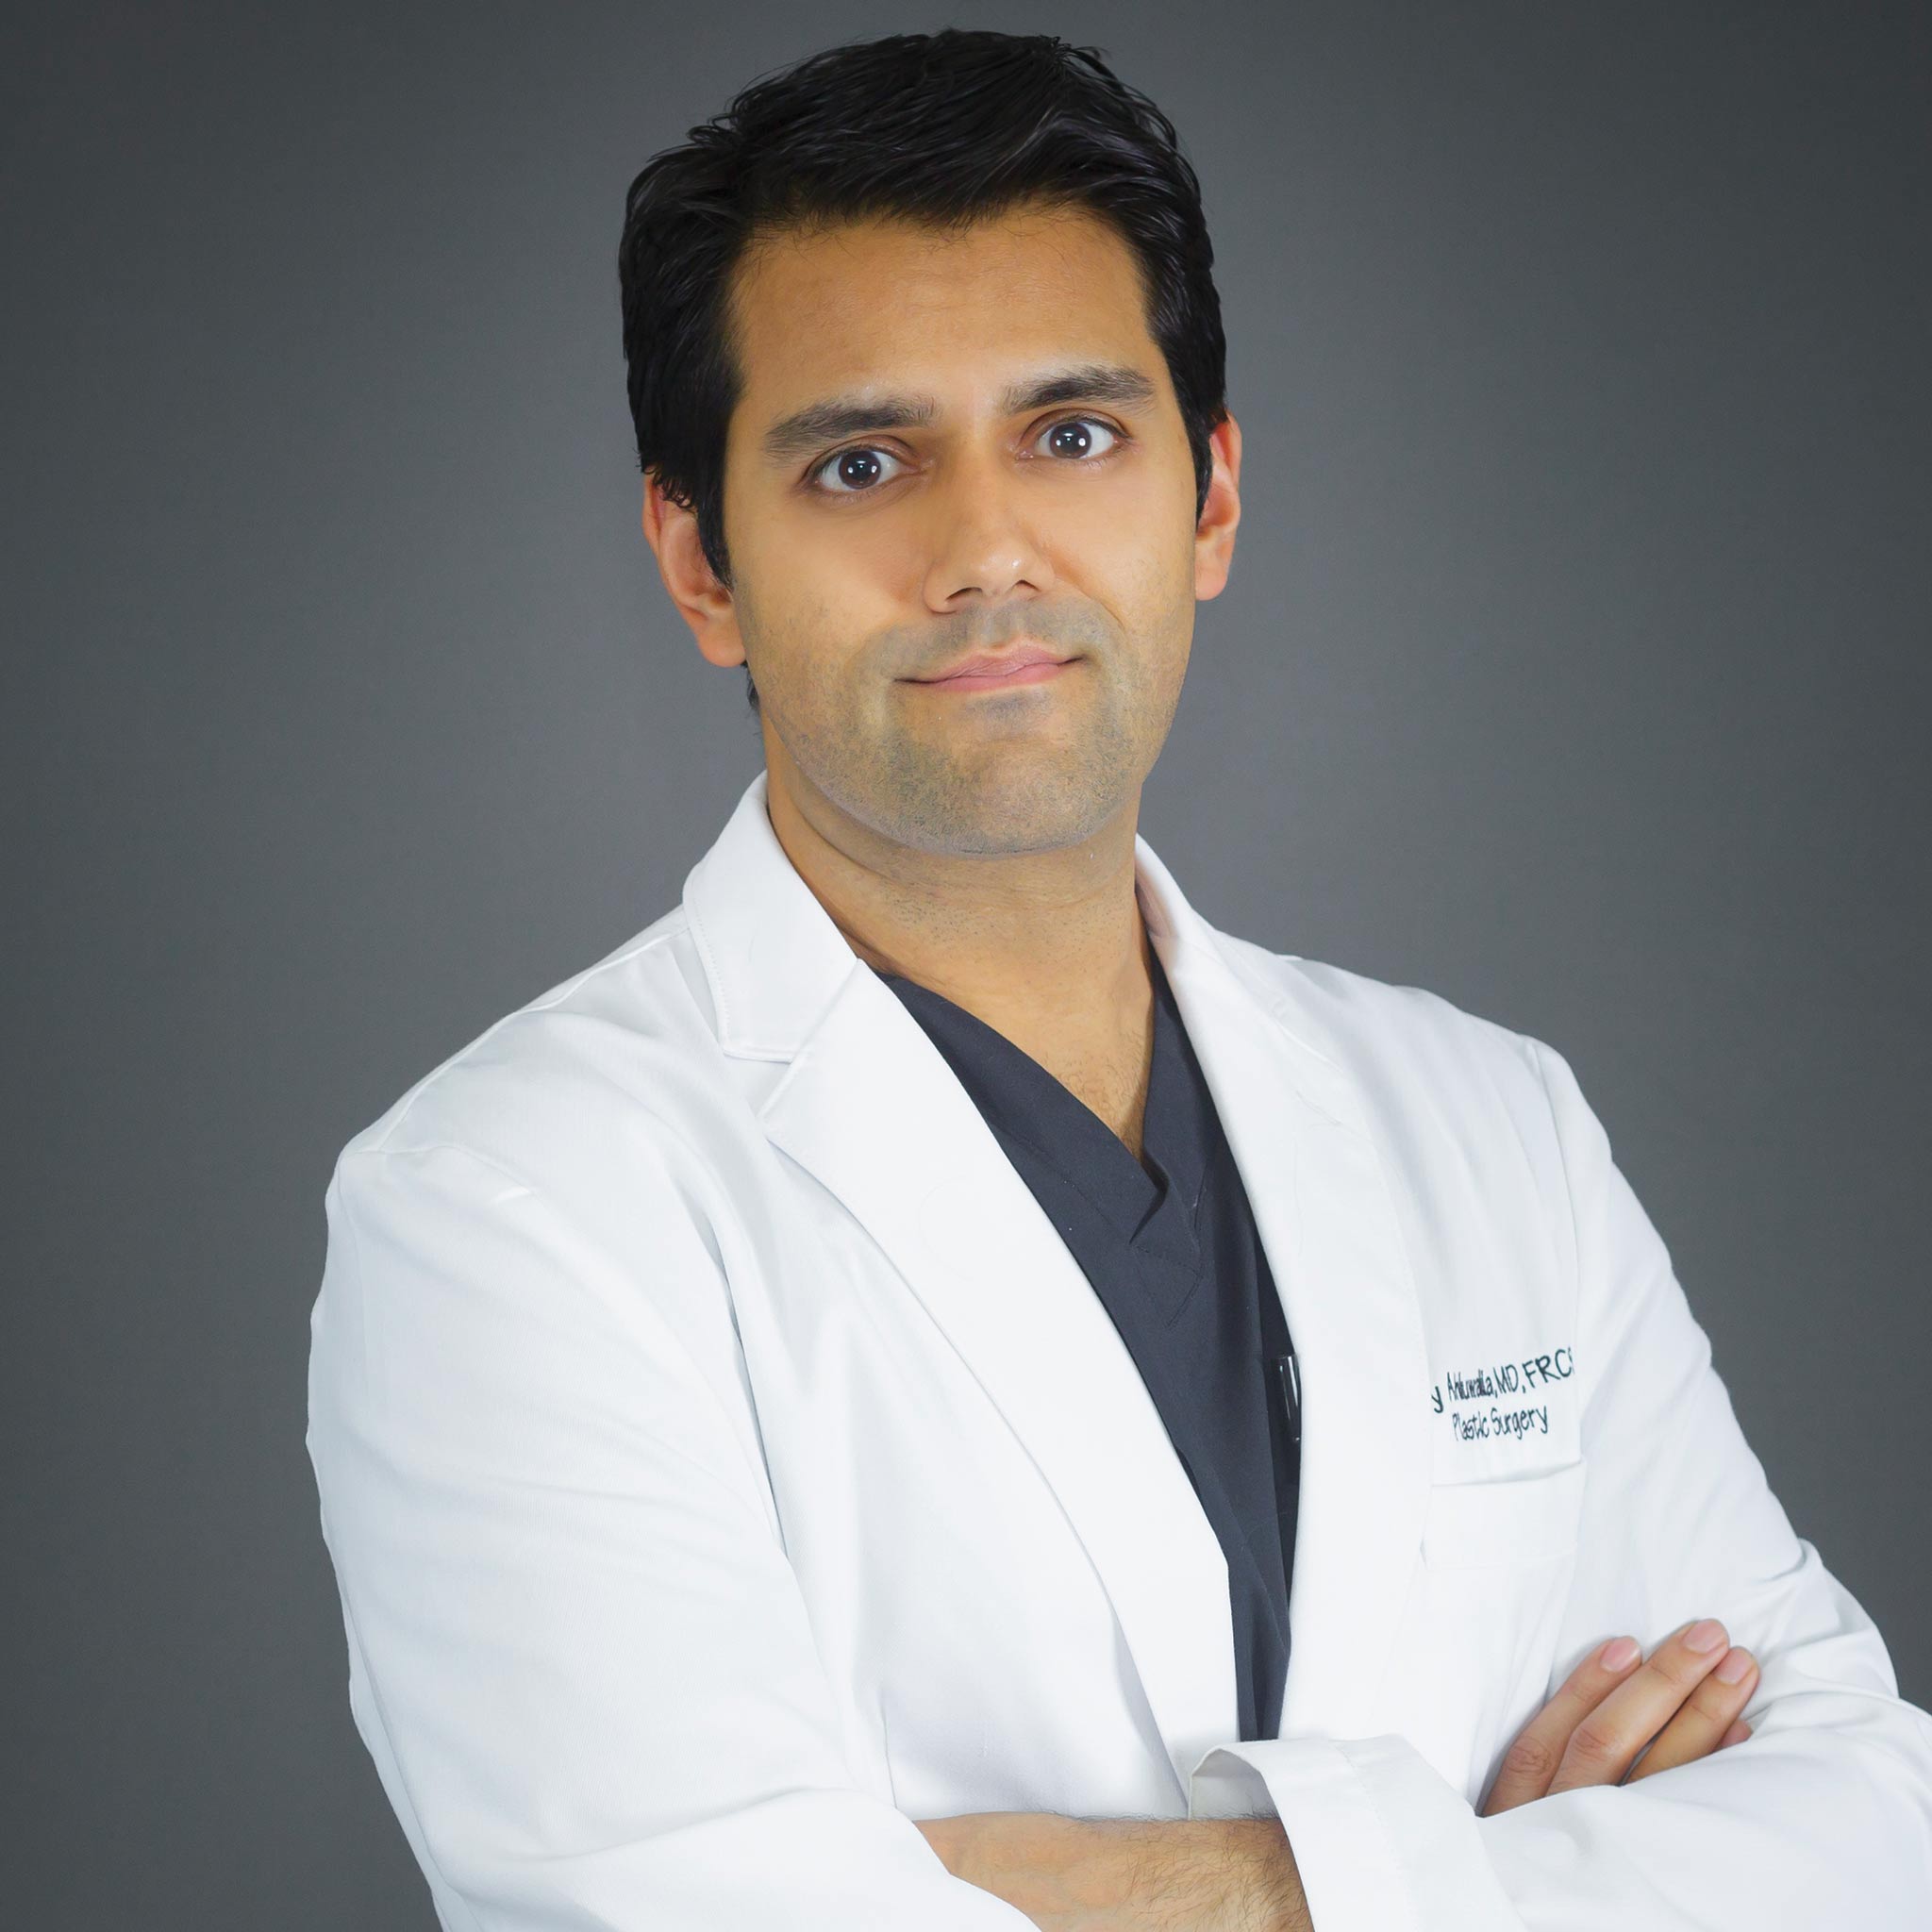 Facelift surgeon Dr. Romy